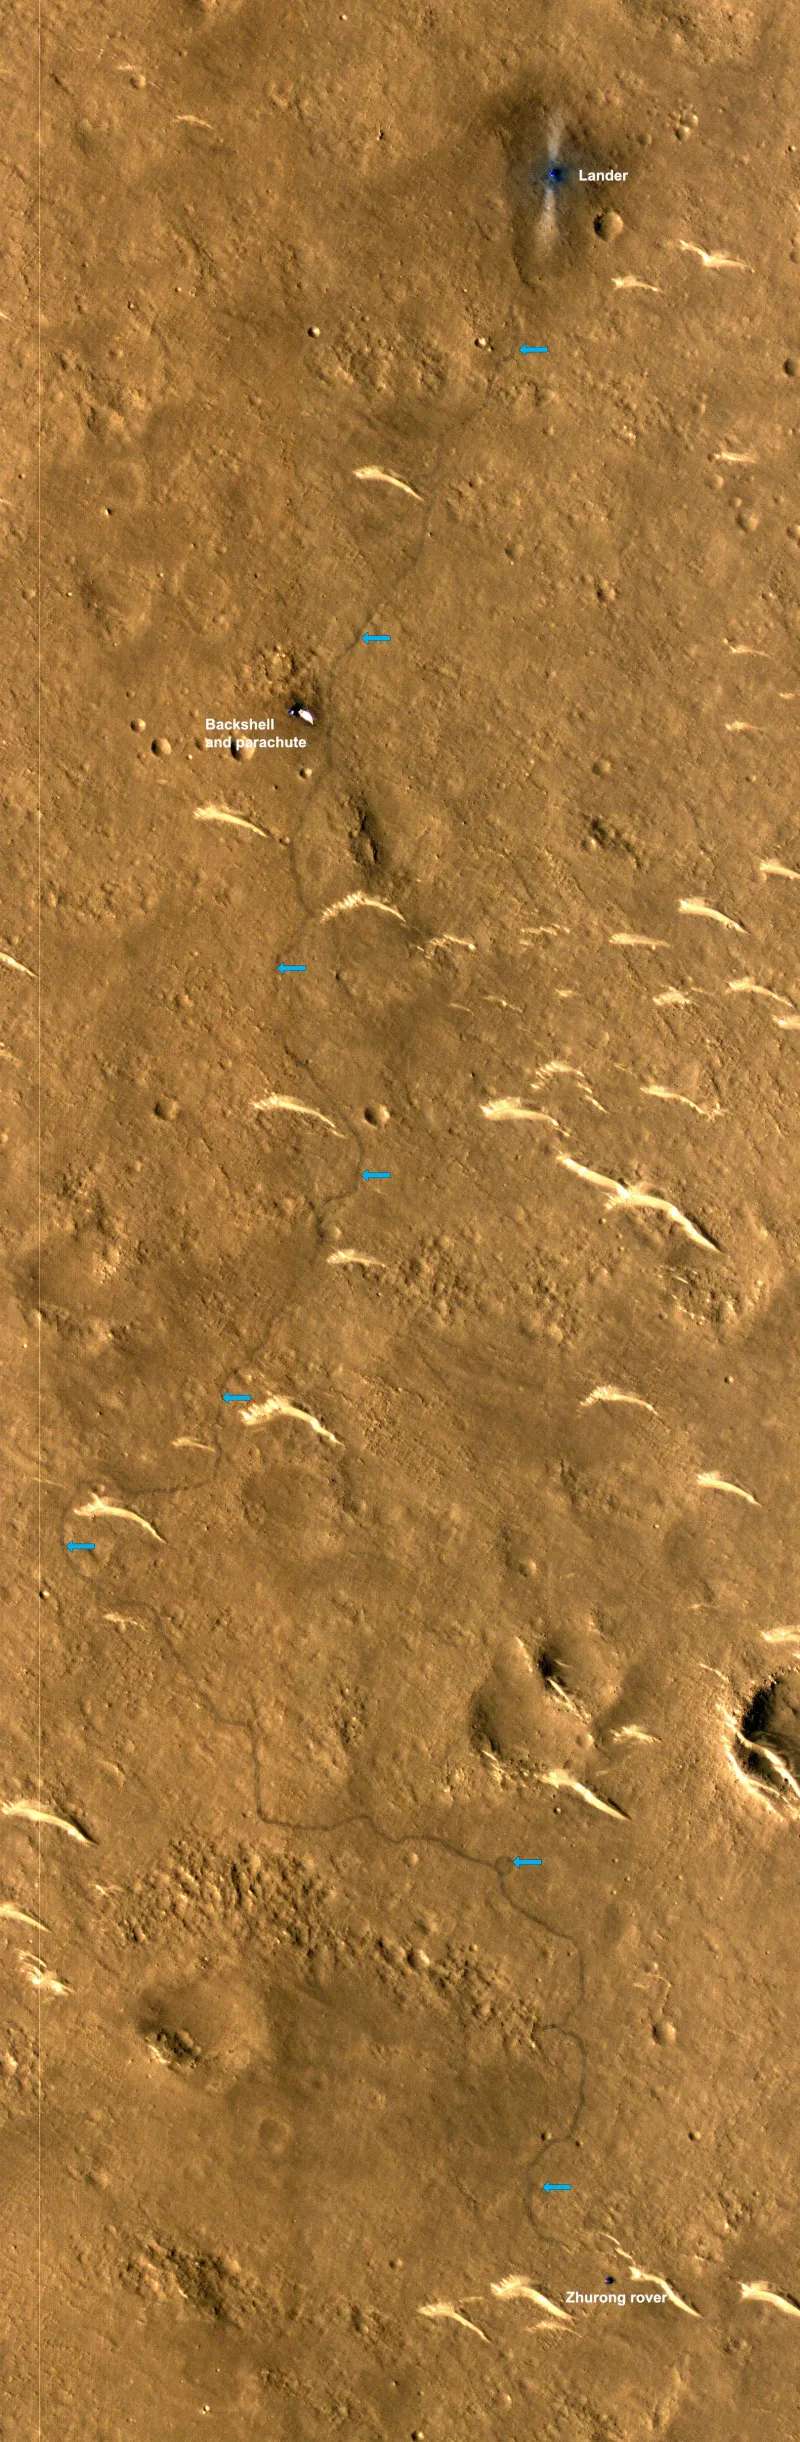 Le rover a parcouru 1 921 mètres sur Mars, une partie de son trajet est représenté ici. © CNSA, Clep